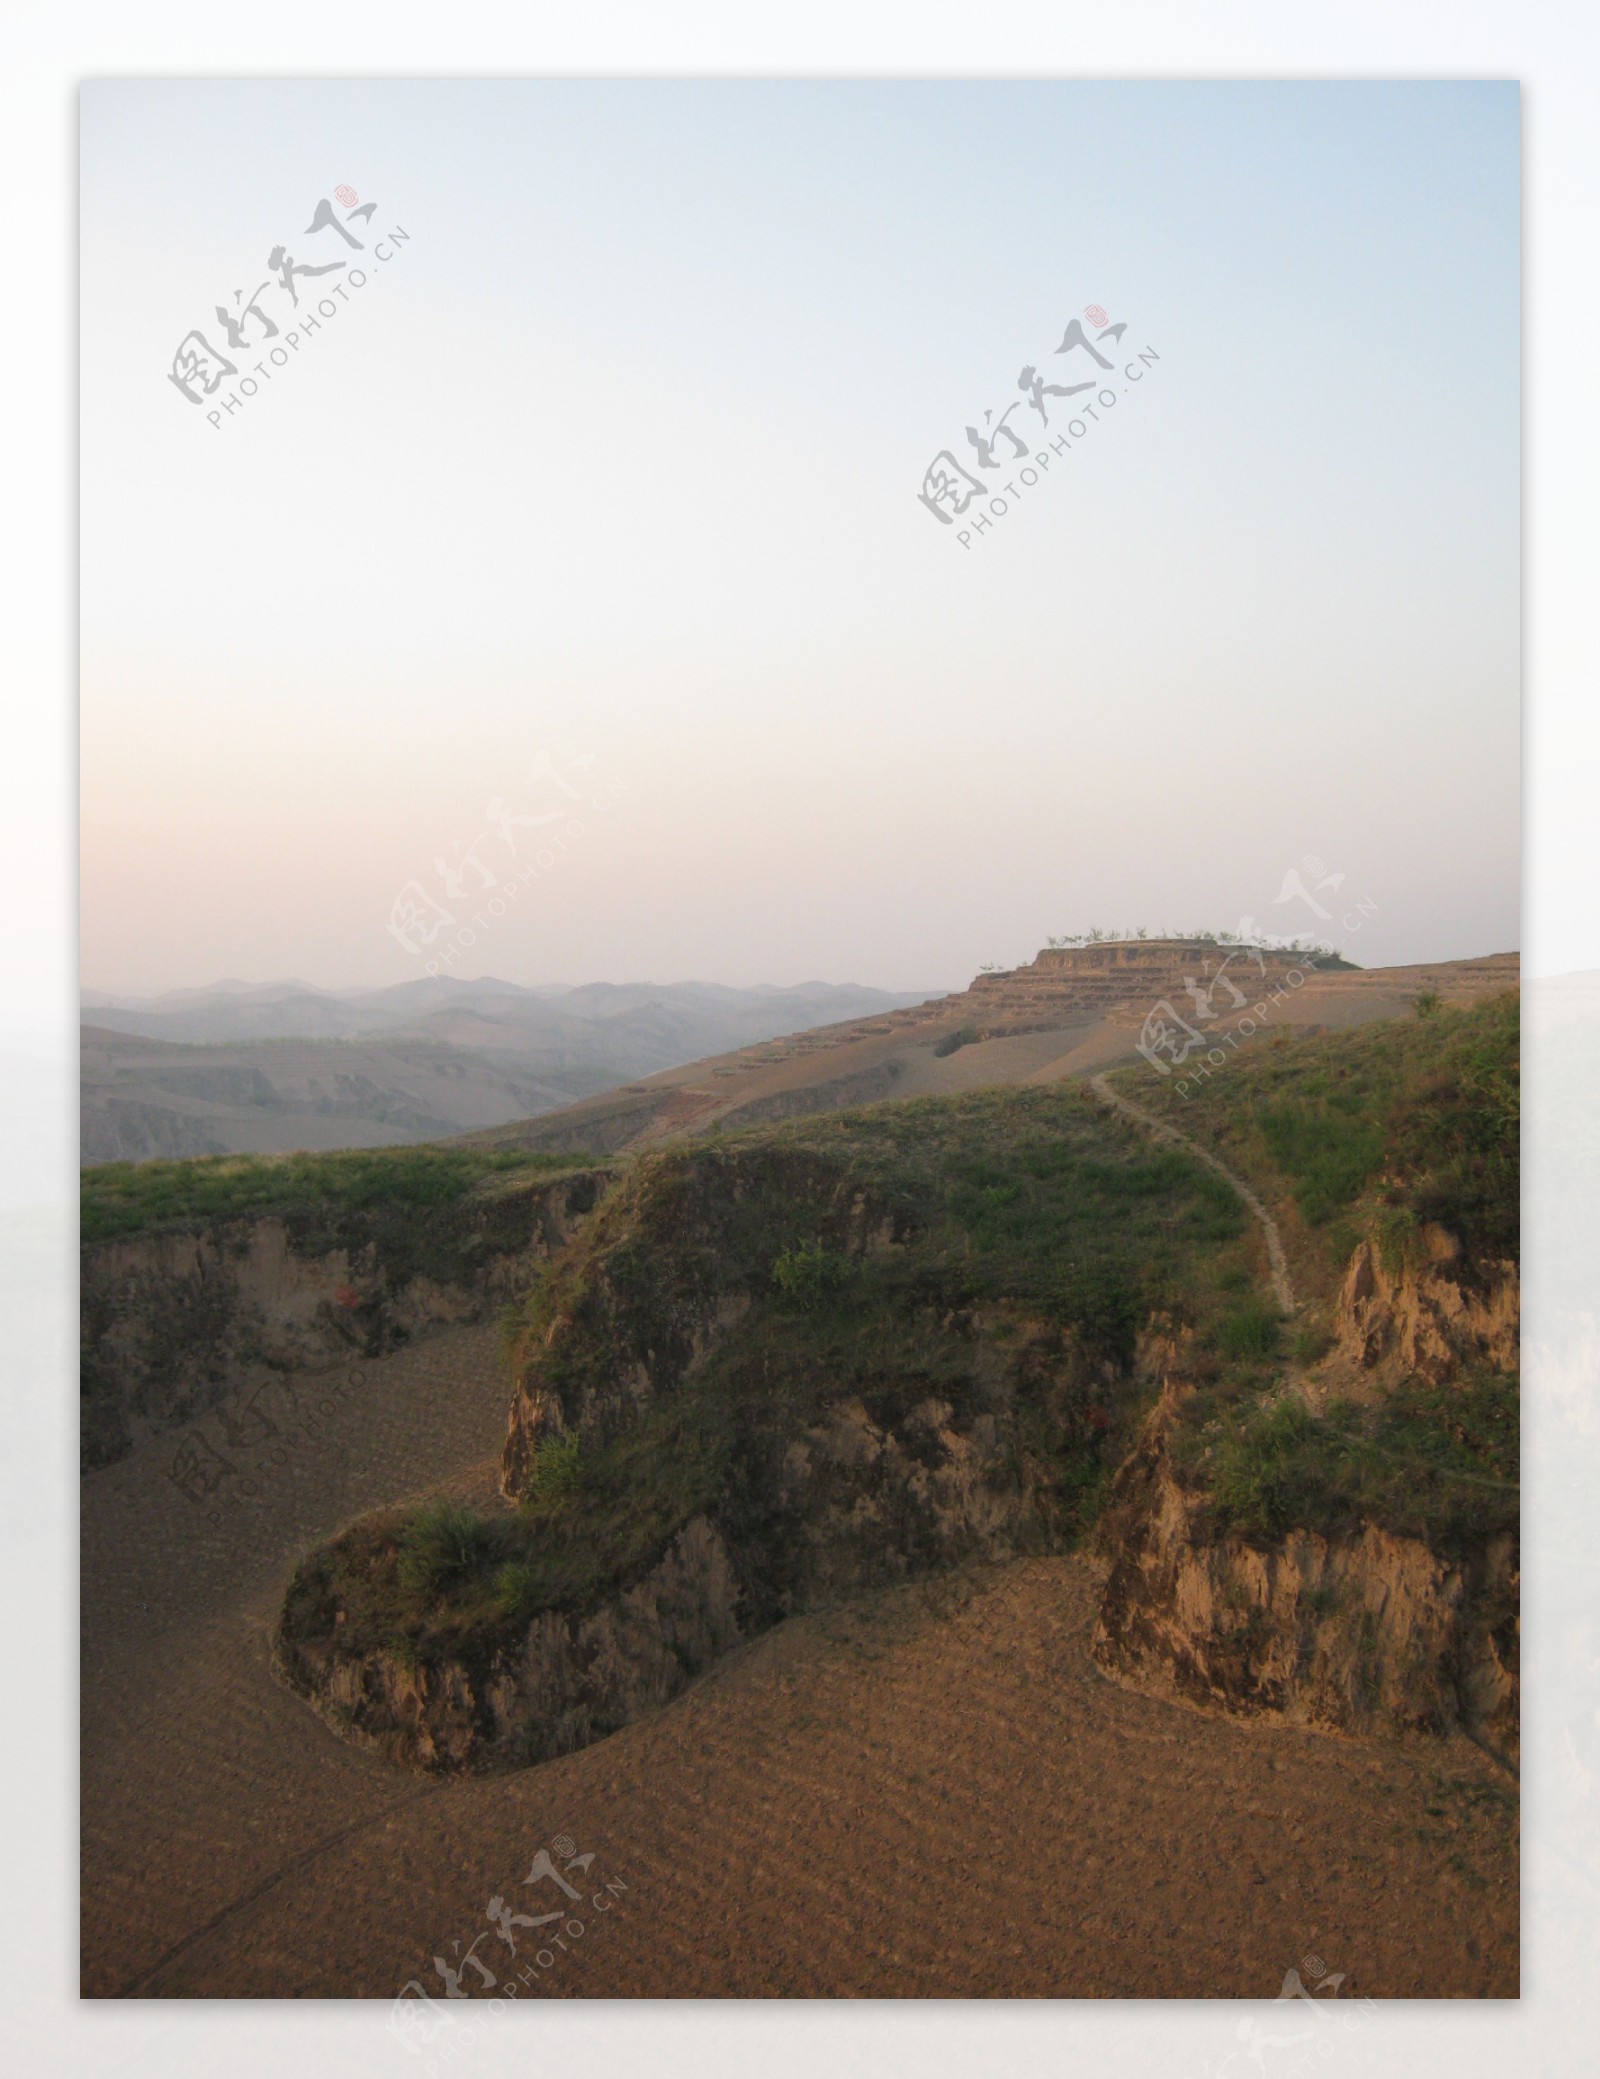 黄土高原的黎明图片